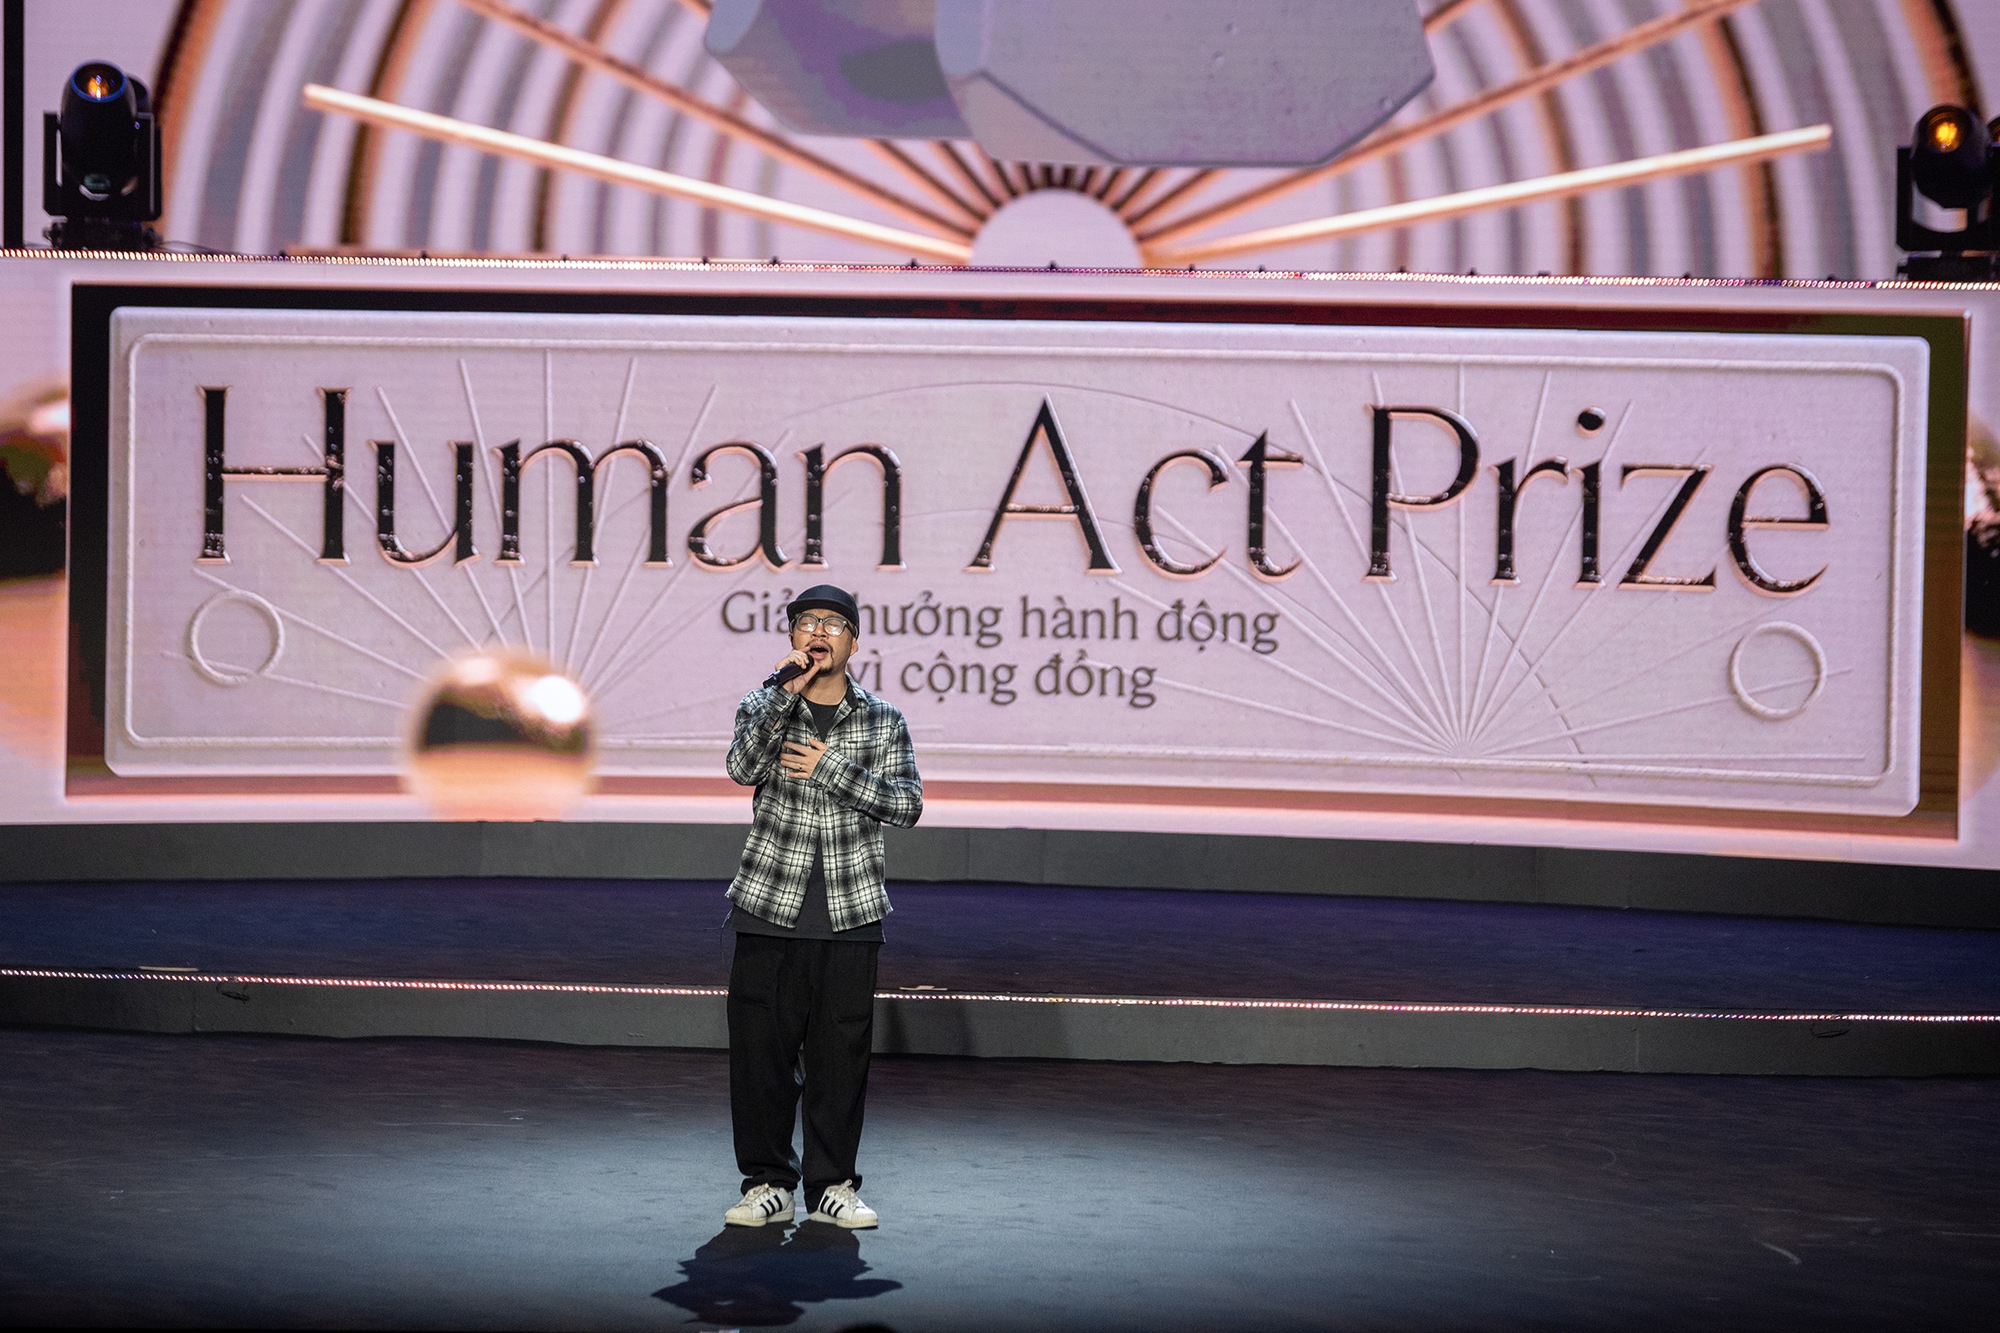 Hé lộ những hình ảnh hiếm trước giờ G của đêm Gala Human Act Prize 2023 - Ảnh 10.